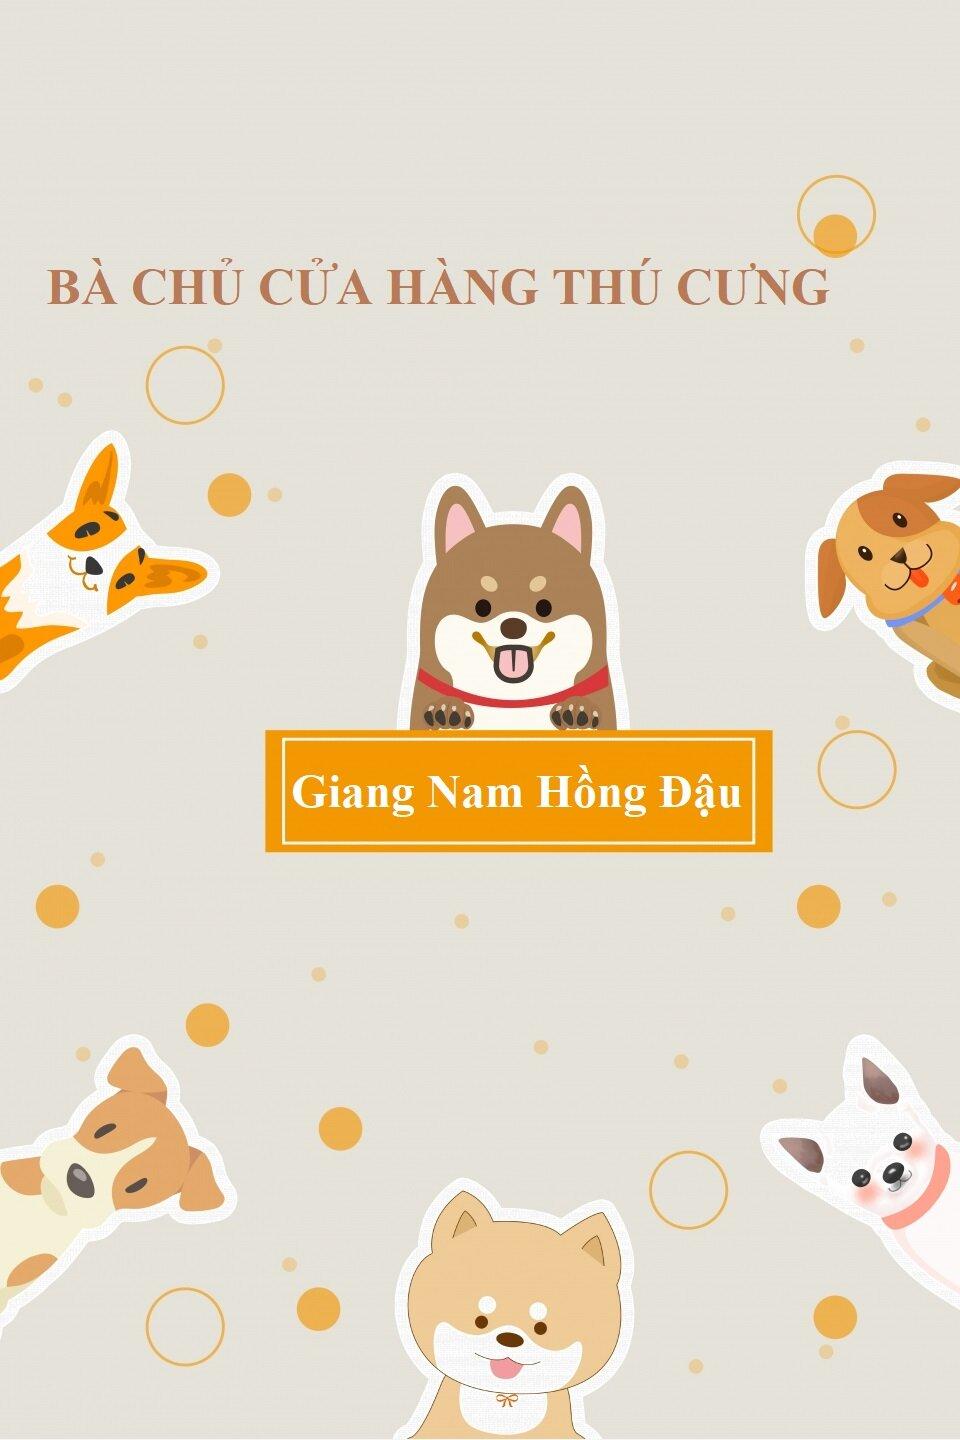 "Bà chủ cửa hàng thú cưng" - Giang Nam Hồng Đậu (Nguồn: Internet).